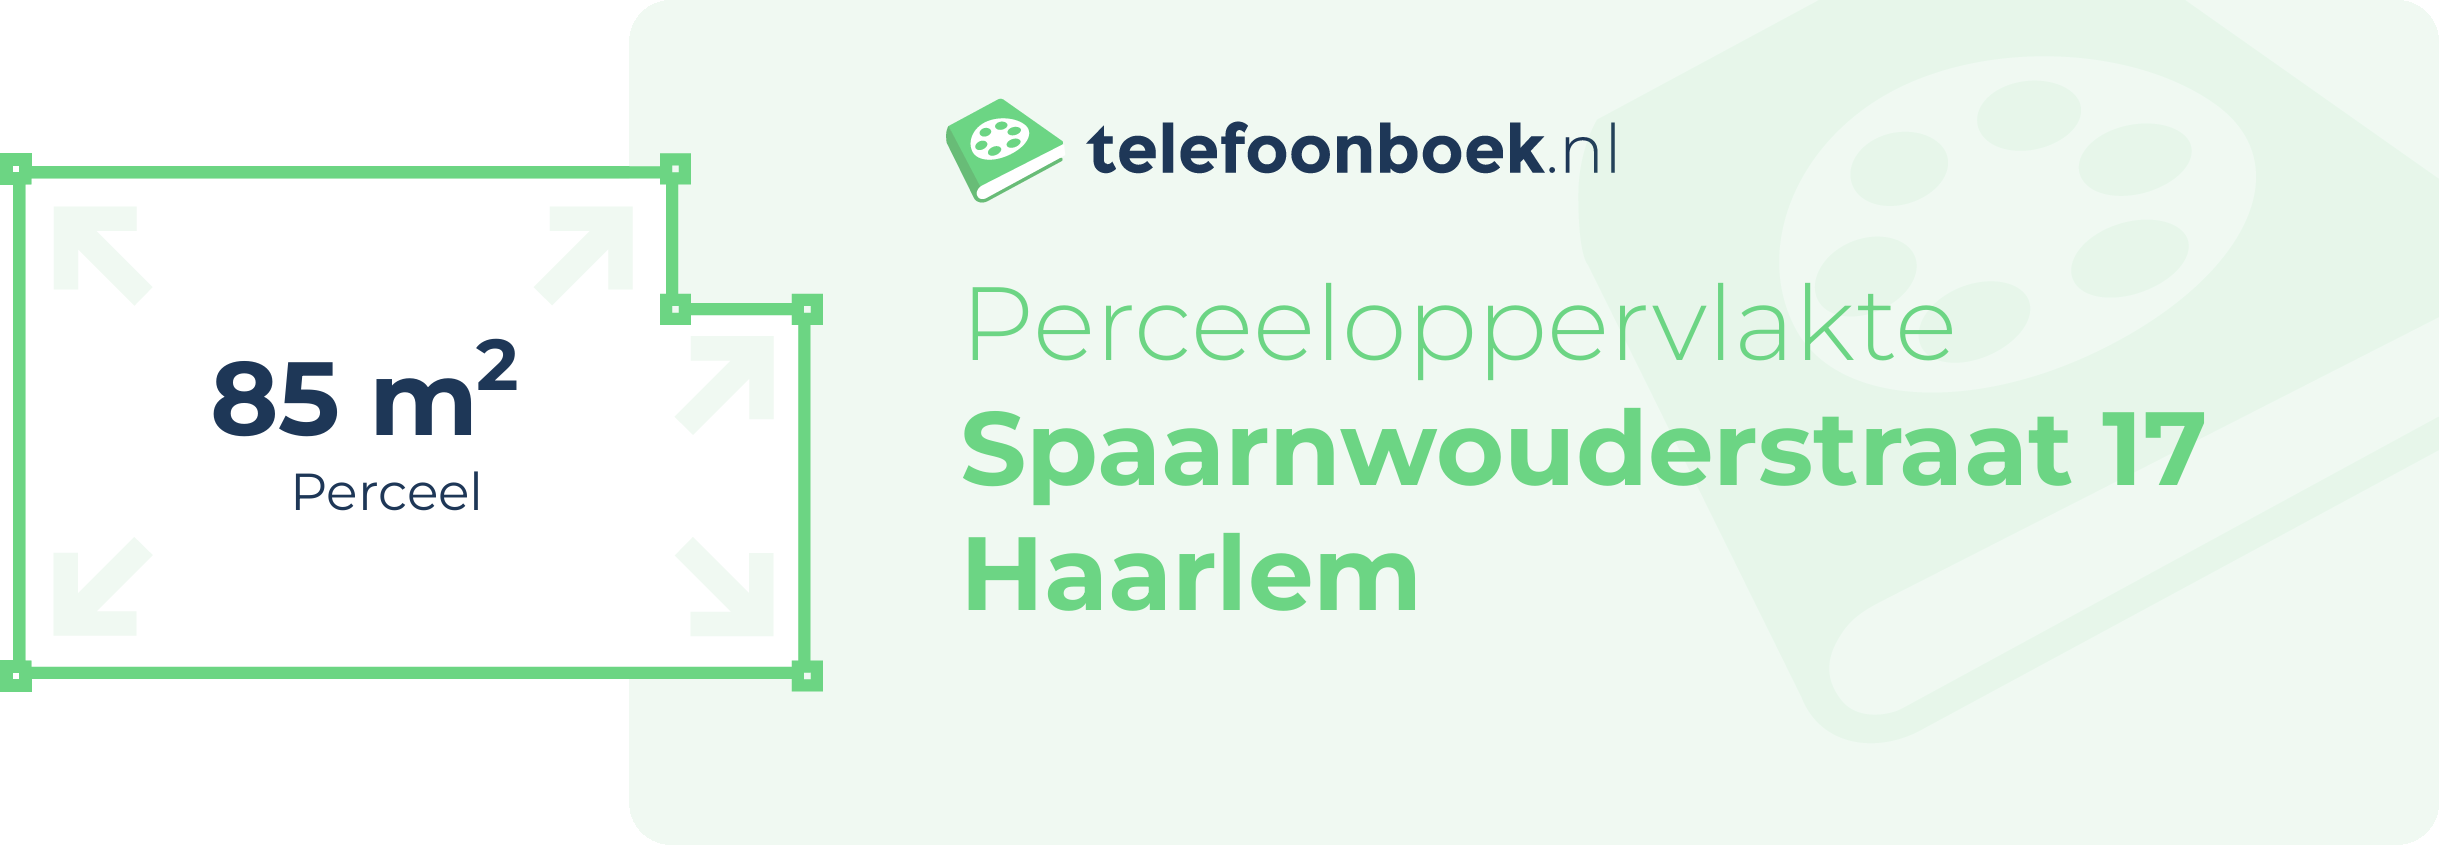 Perceeloppervlakte Spaarnwouderstraat 17 Haarlem